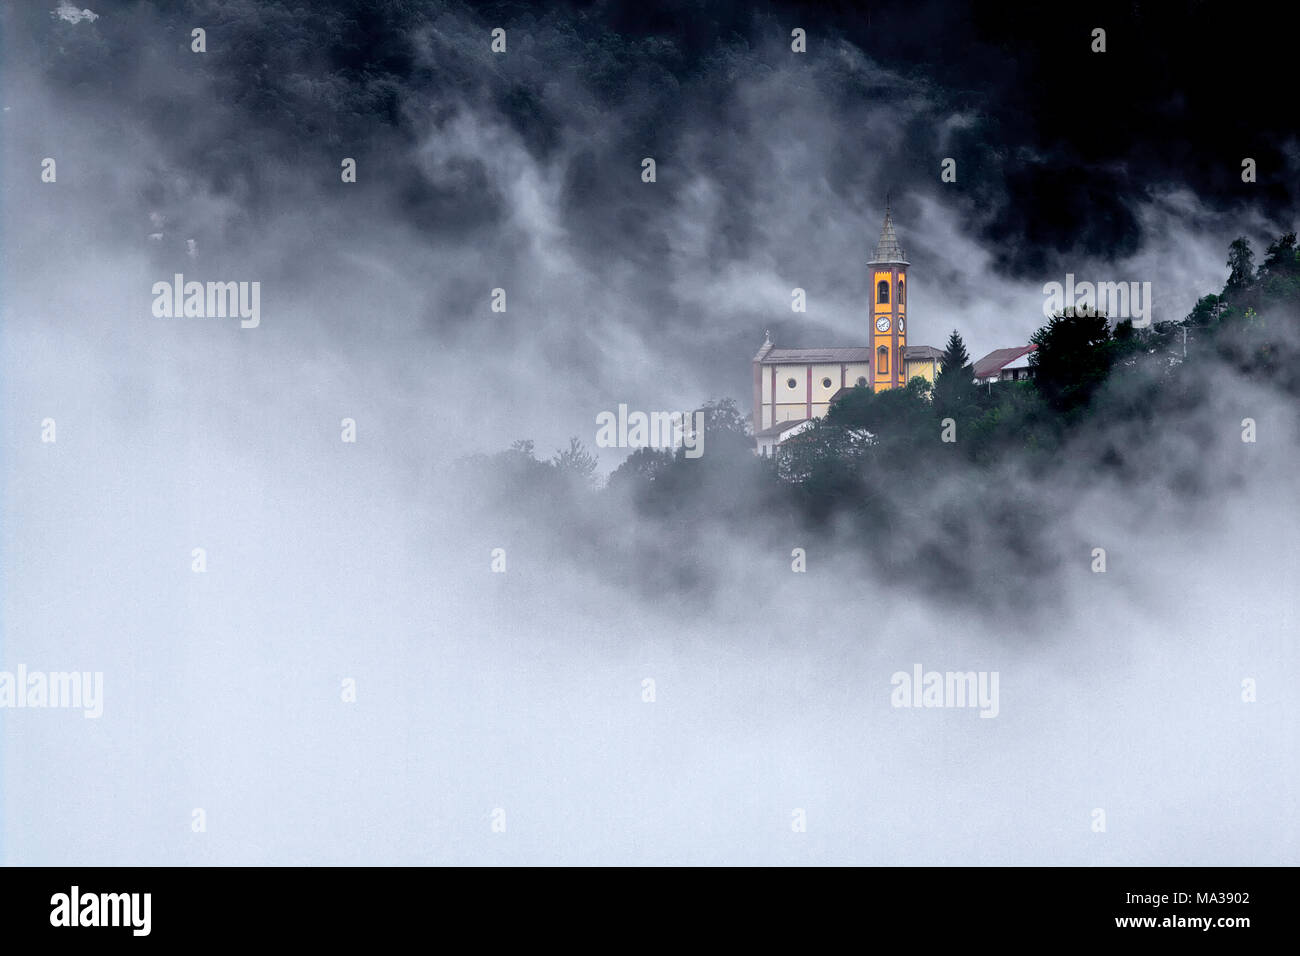 La chiesa del villaggio di cappello, comune di Garessio, in Alta Valle Tanaro, circondato dalla nebbia che risale la valle. Foto Stock